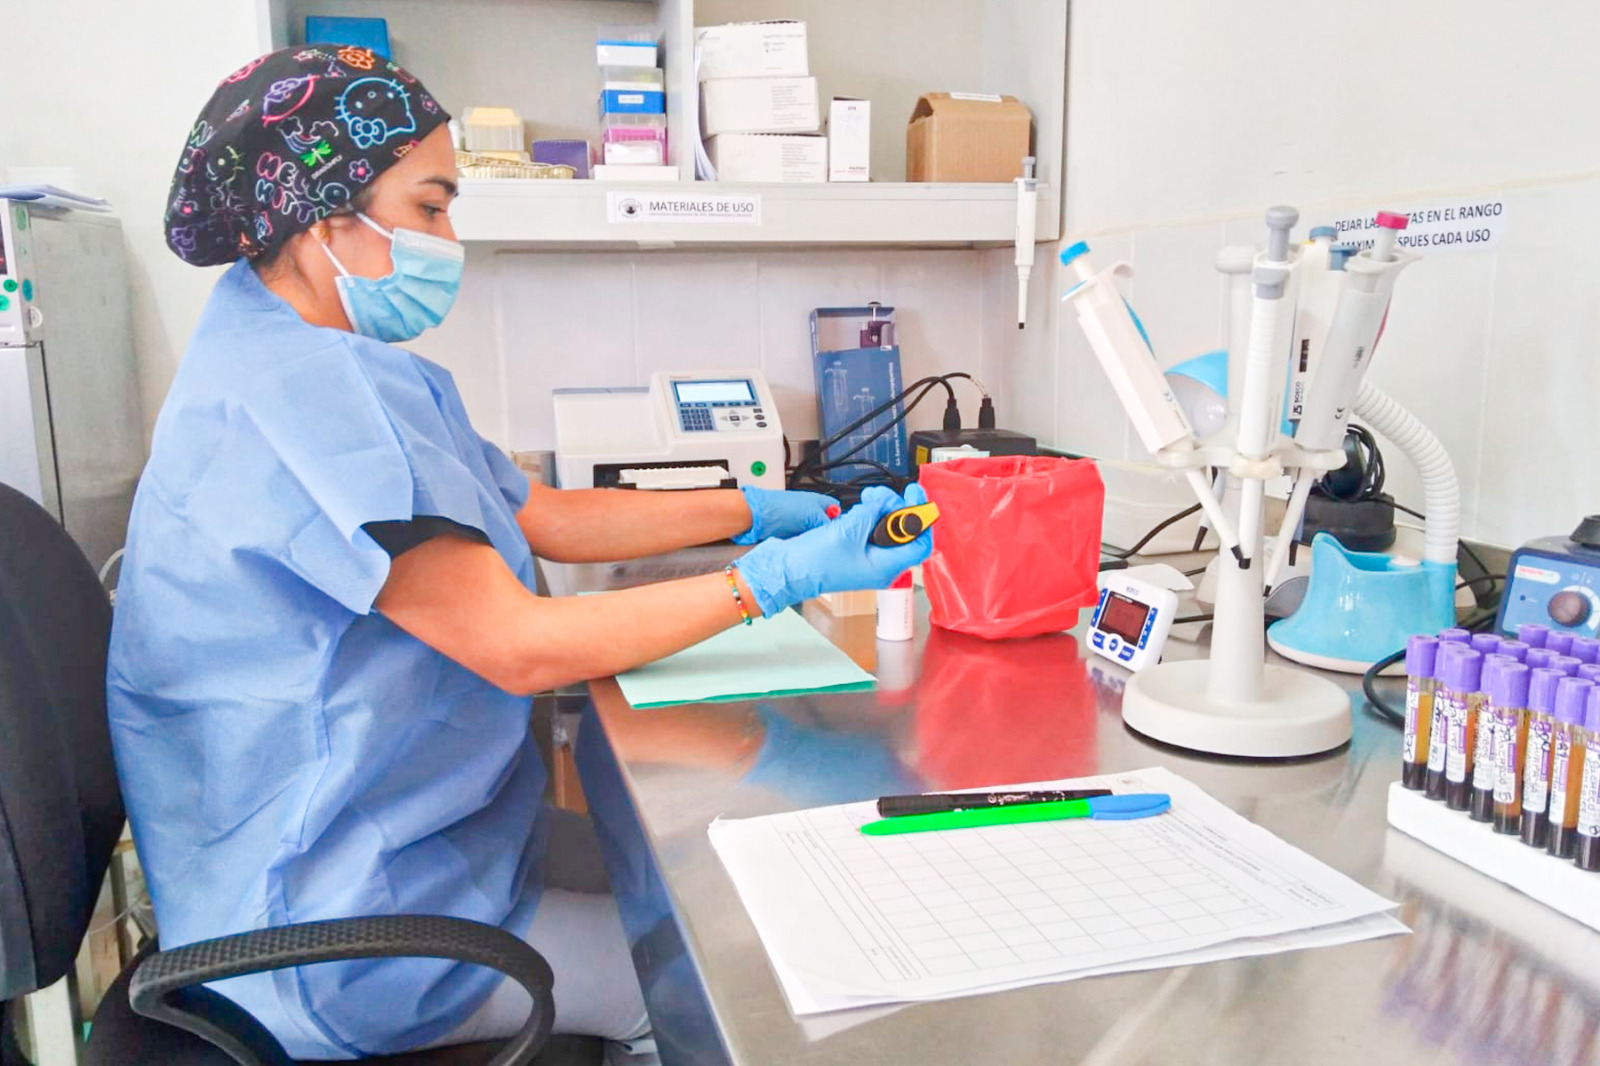 Región Callao lucha contra el dengue y abastece centros de salud con pruebas rápidas para su detección temprana